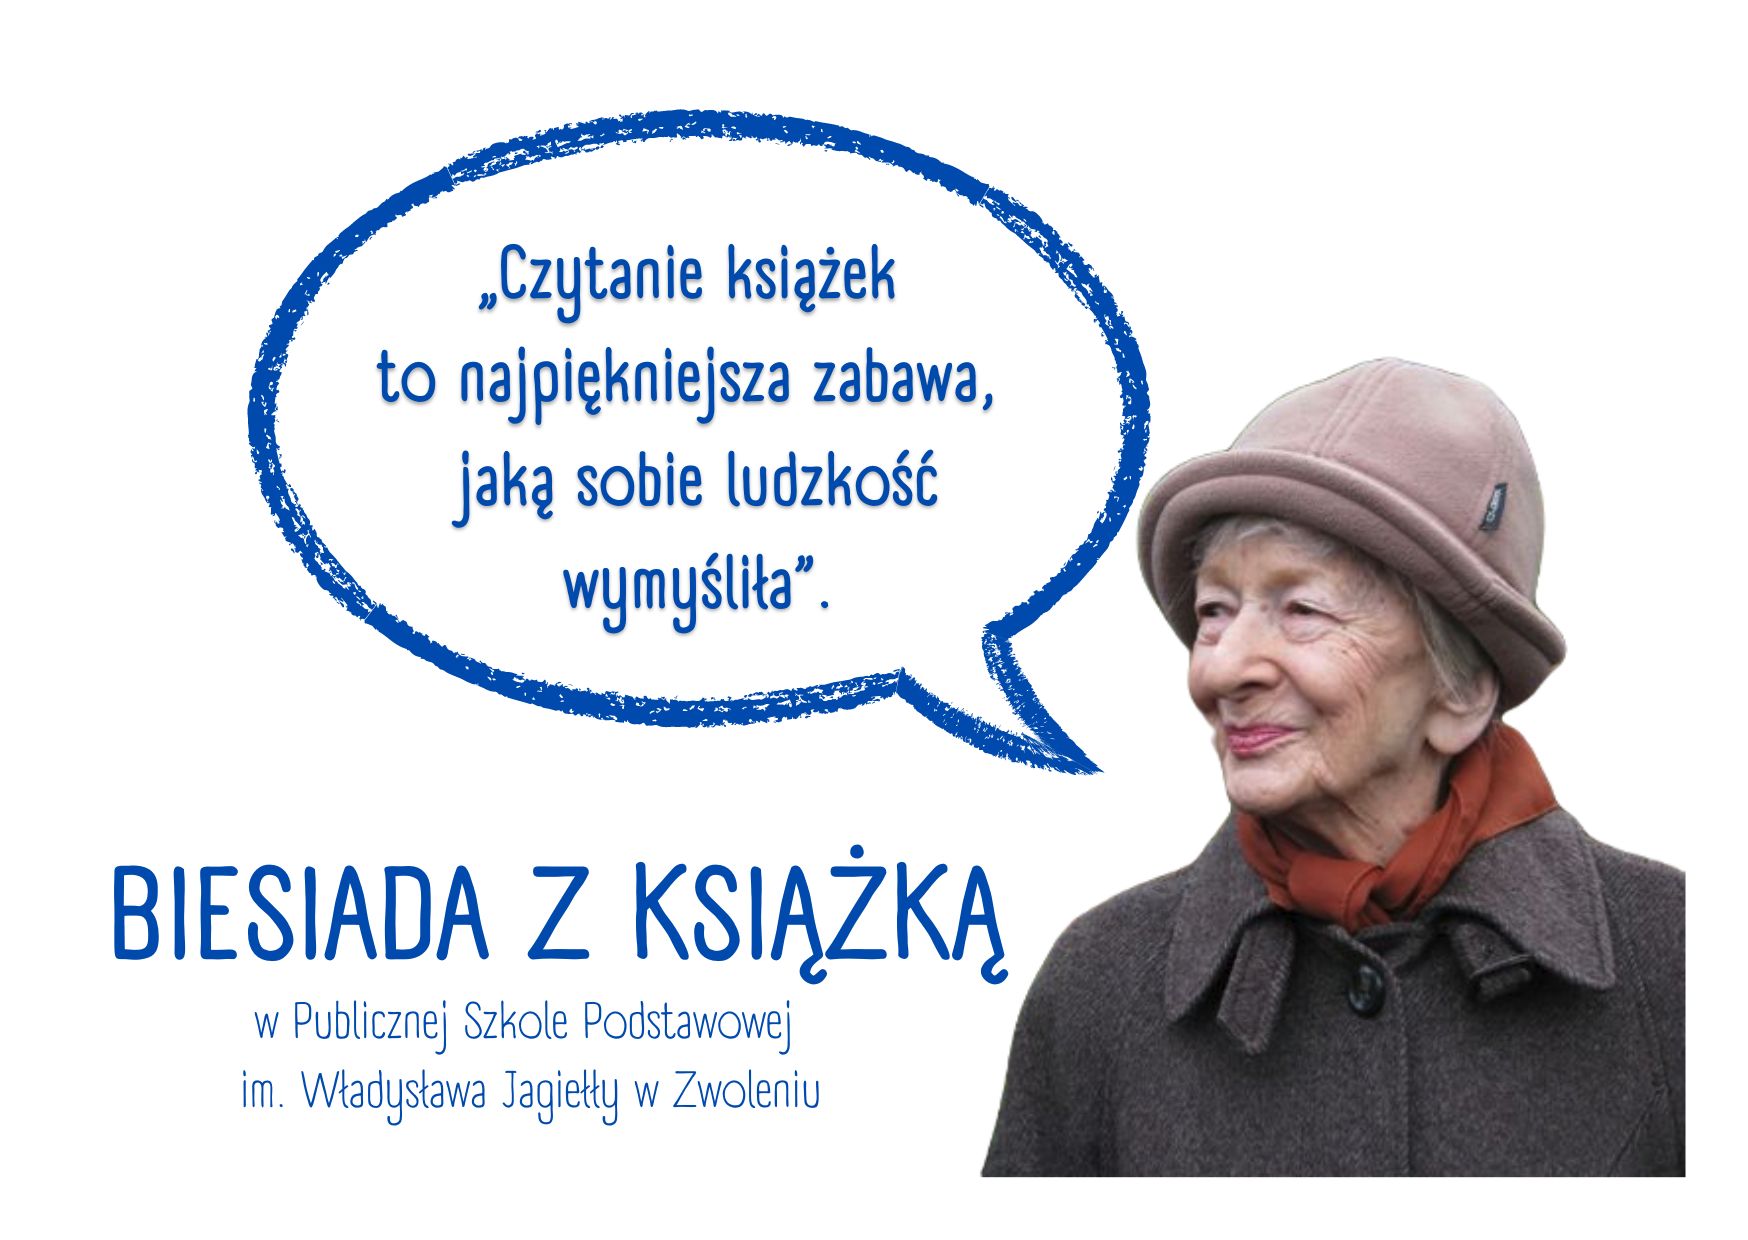 Postać Wisławy Szymborskiej oraz jej cytat „Czytanie książek to najpiękniejsza zabawa, jaką sobie ludzkość wymyśliła”.